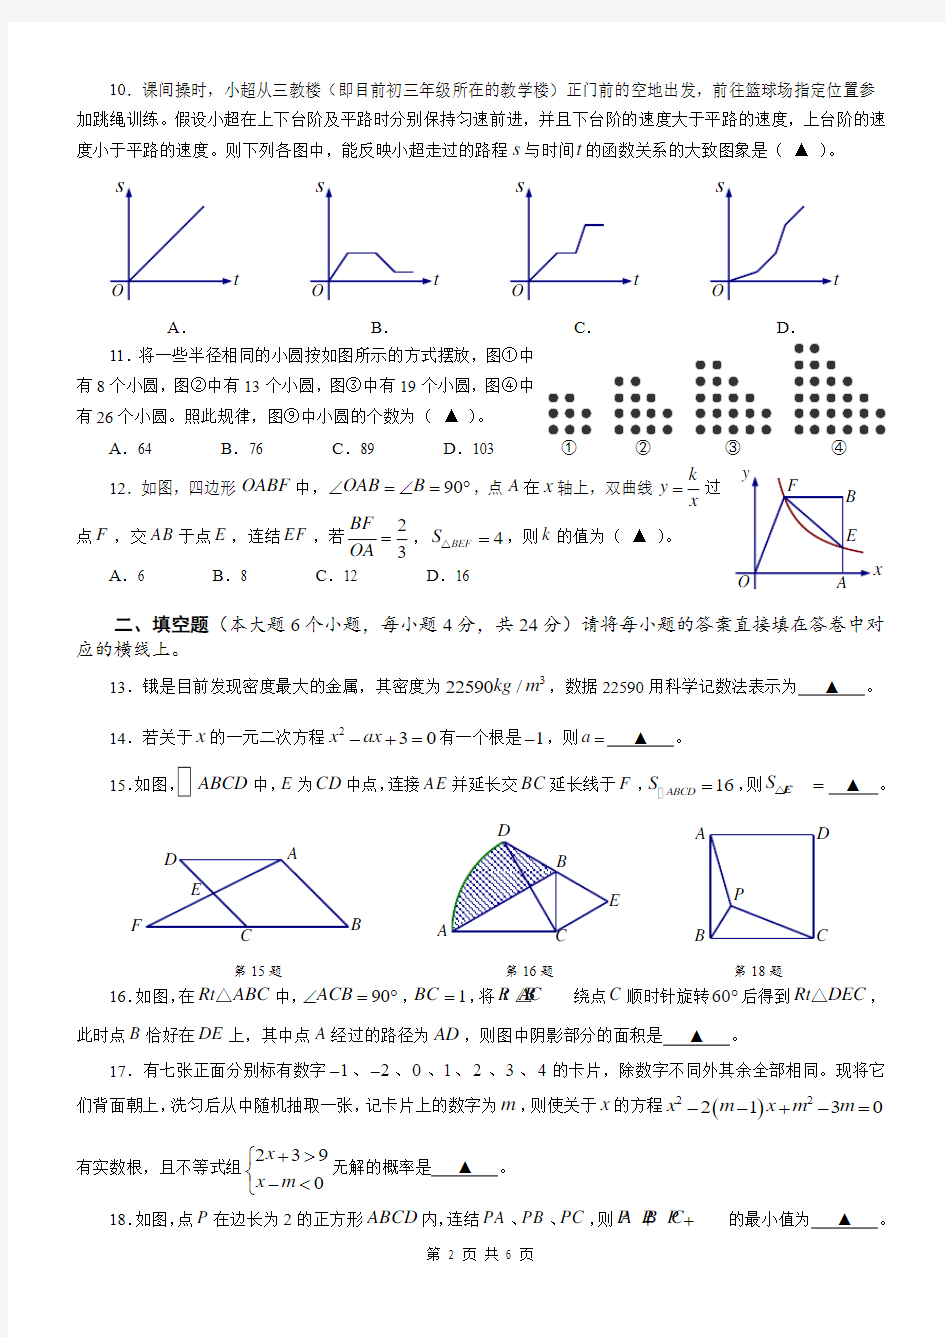 重庆南开中学初2018年九年级(上)期末考试数学试题